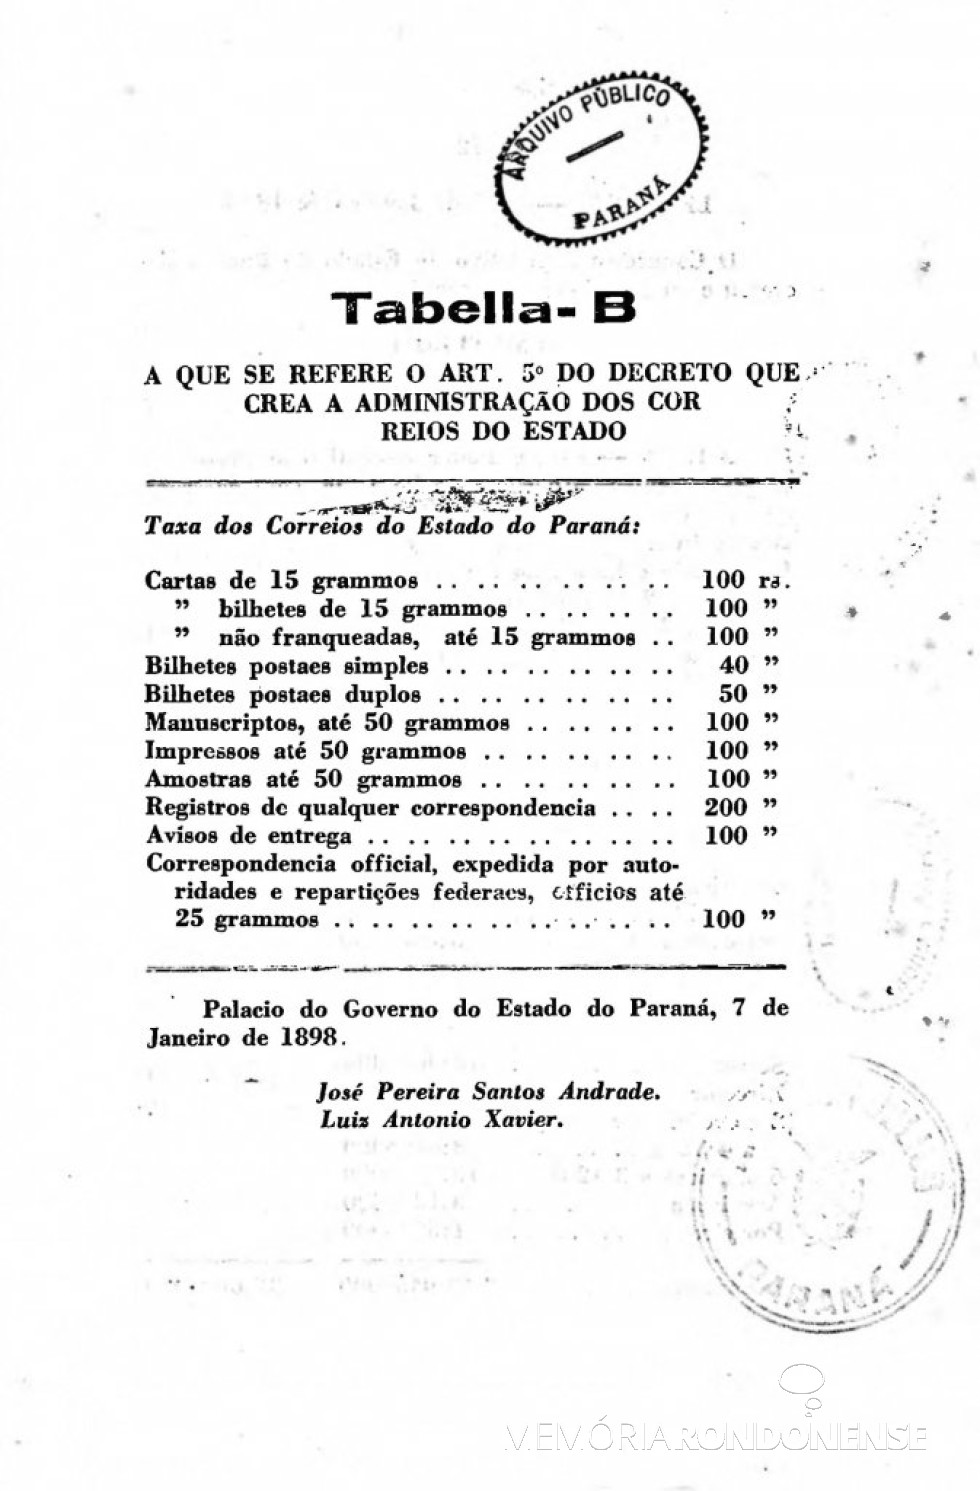 Página final da publicação da Lei nº 276/1898.
Imagem: Acervo Arquivo Público do Paraná - FOTO 6 -